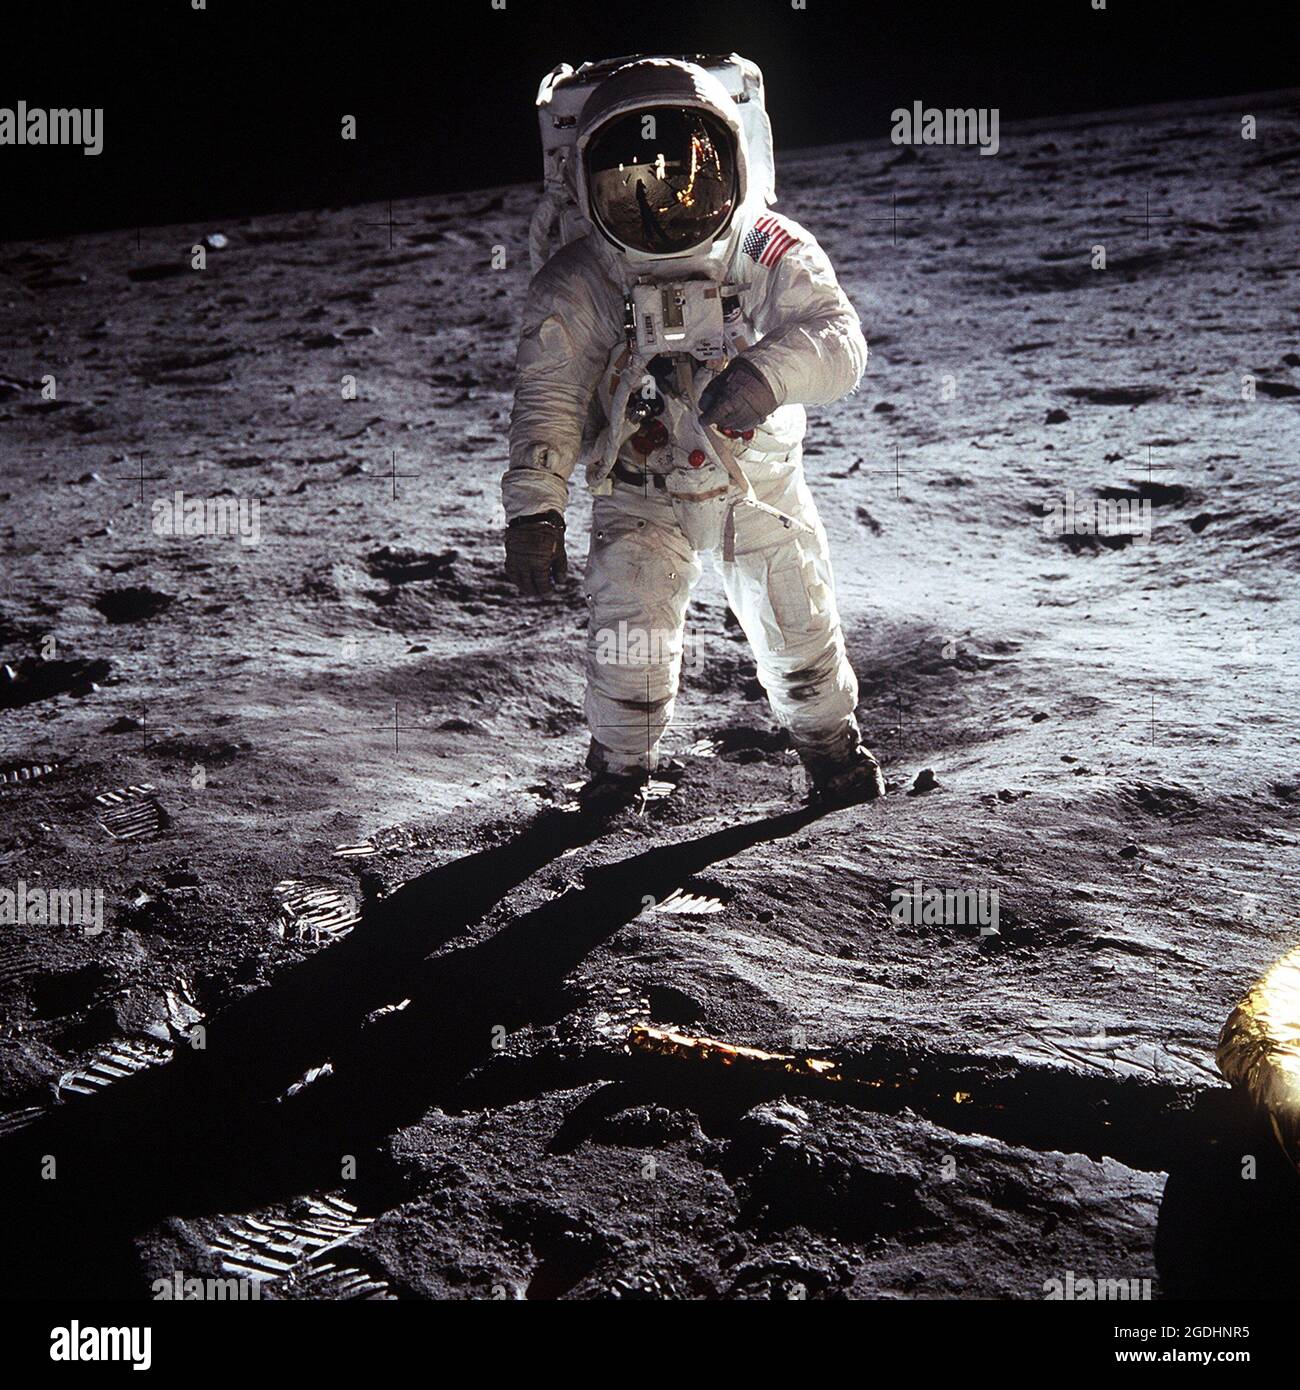 Astronaut Buzz Aldrin, Mondmodulpilot der ersten Mondlandemission Apollo 11, auf der Oberfläche des Mondes. Stockfoto